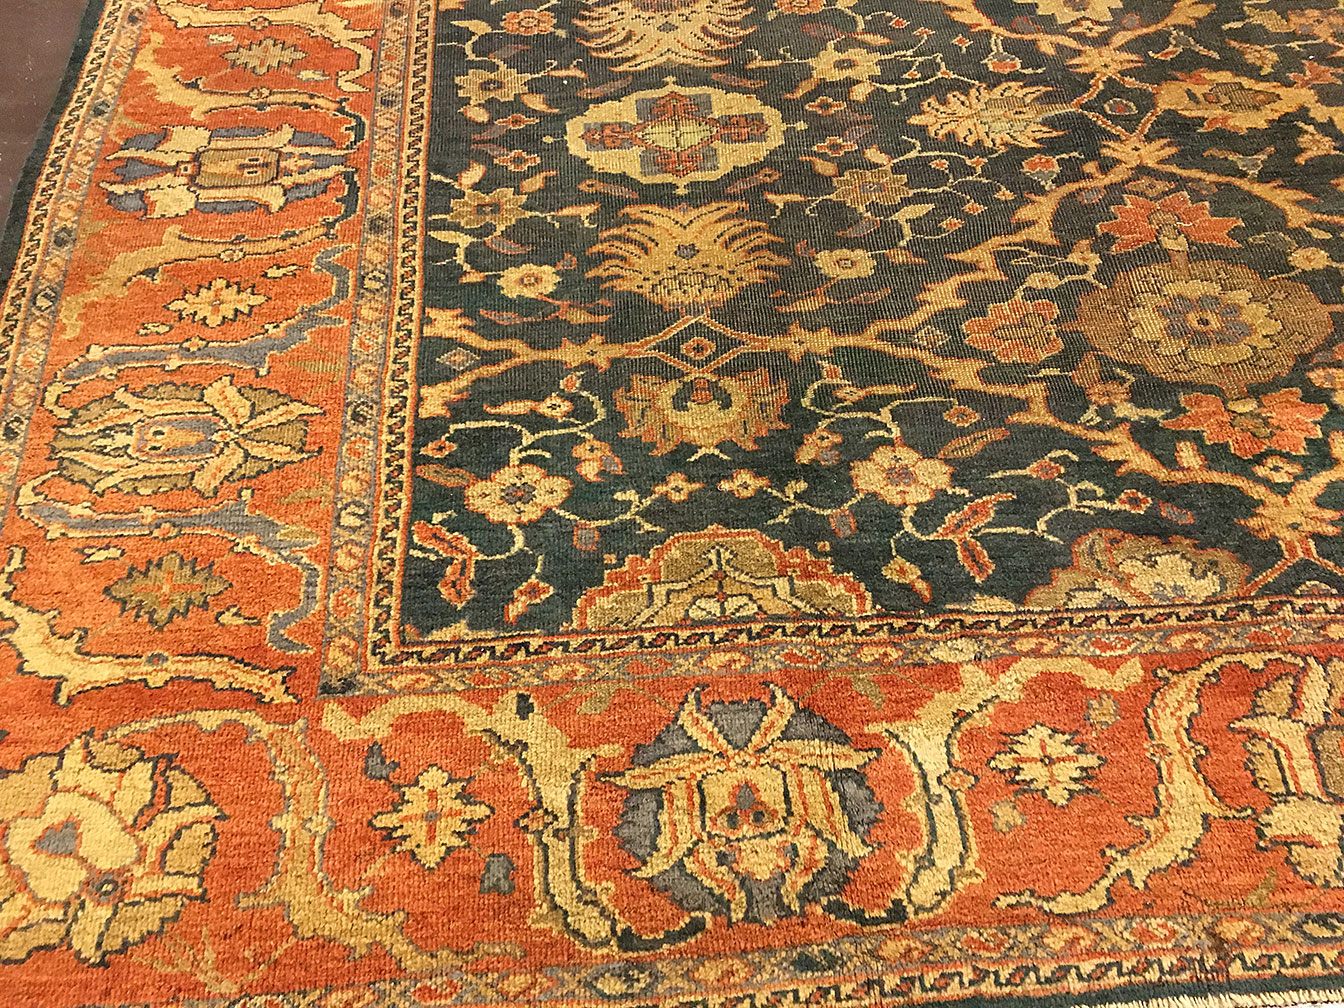 Antique sultan abad Carpet - # 50105